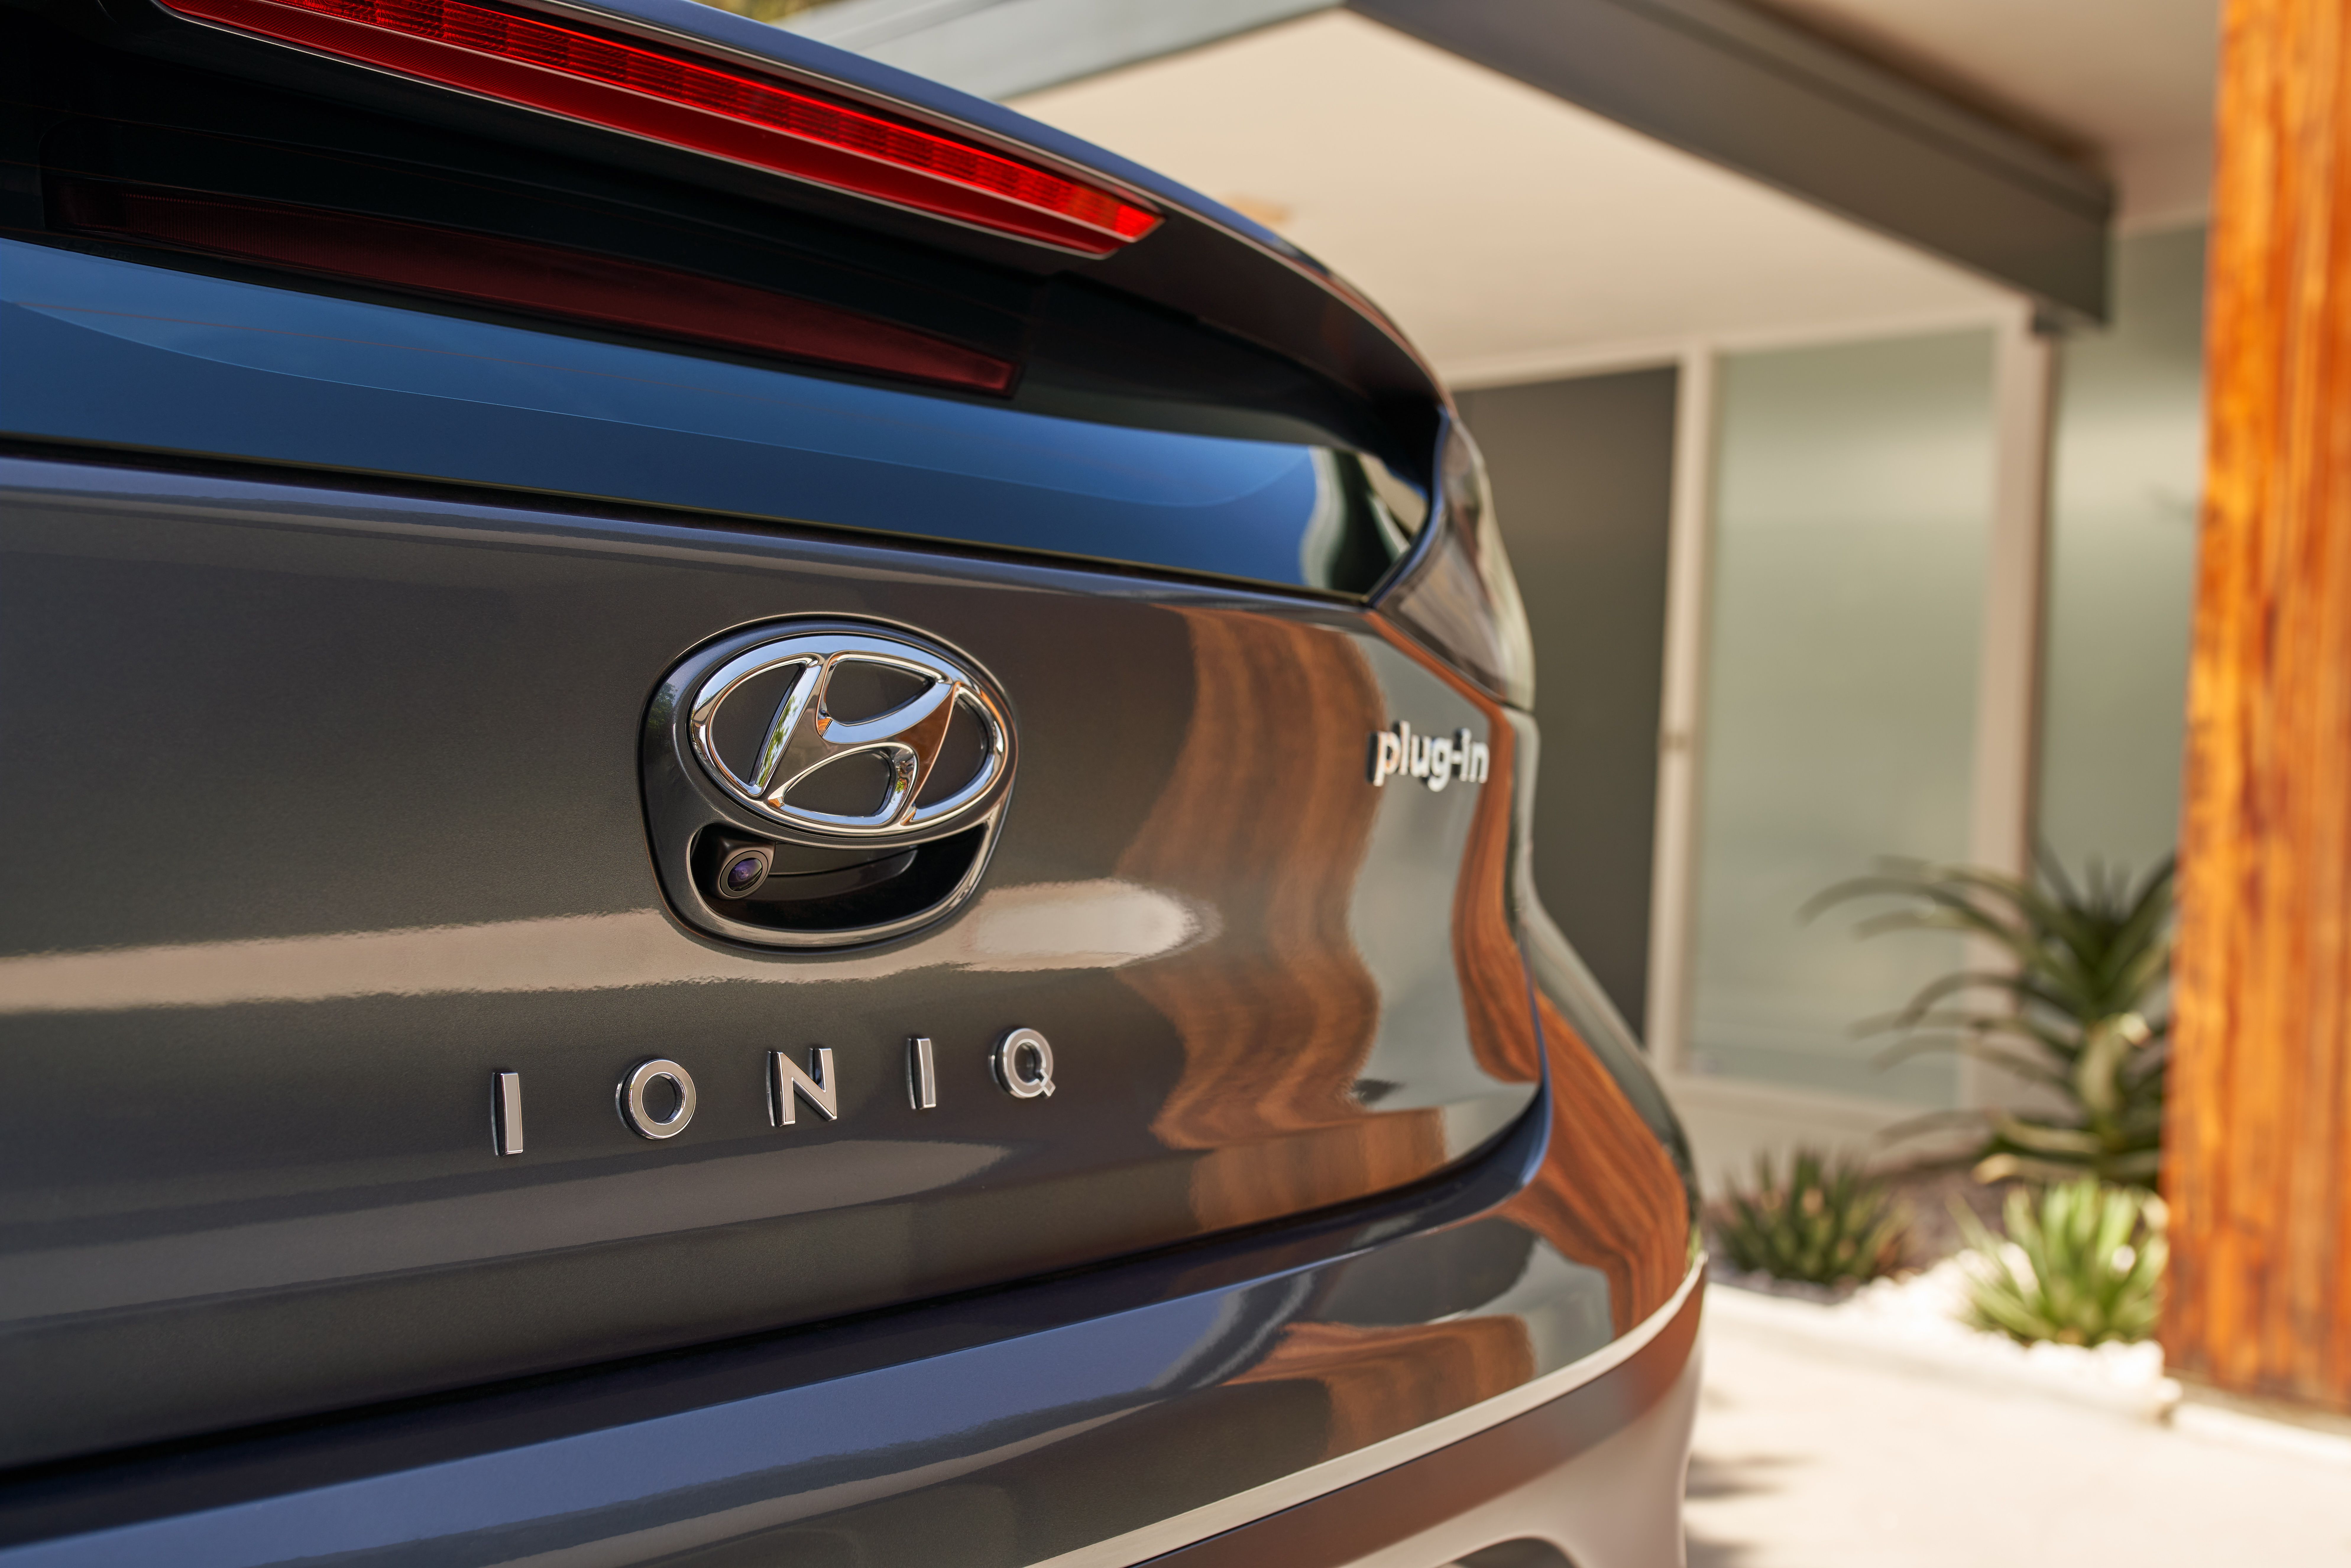 2022 Hyundai Ioniq Hybrid & Plug-in Hybrid